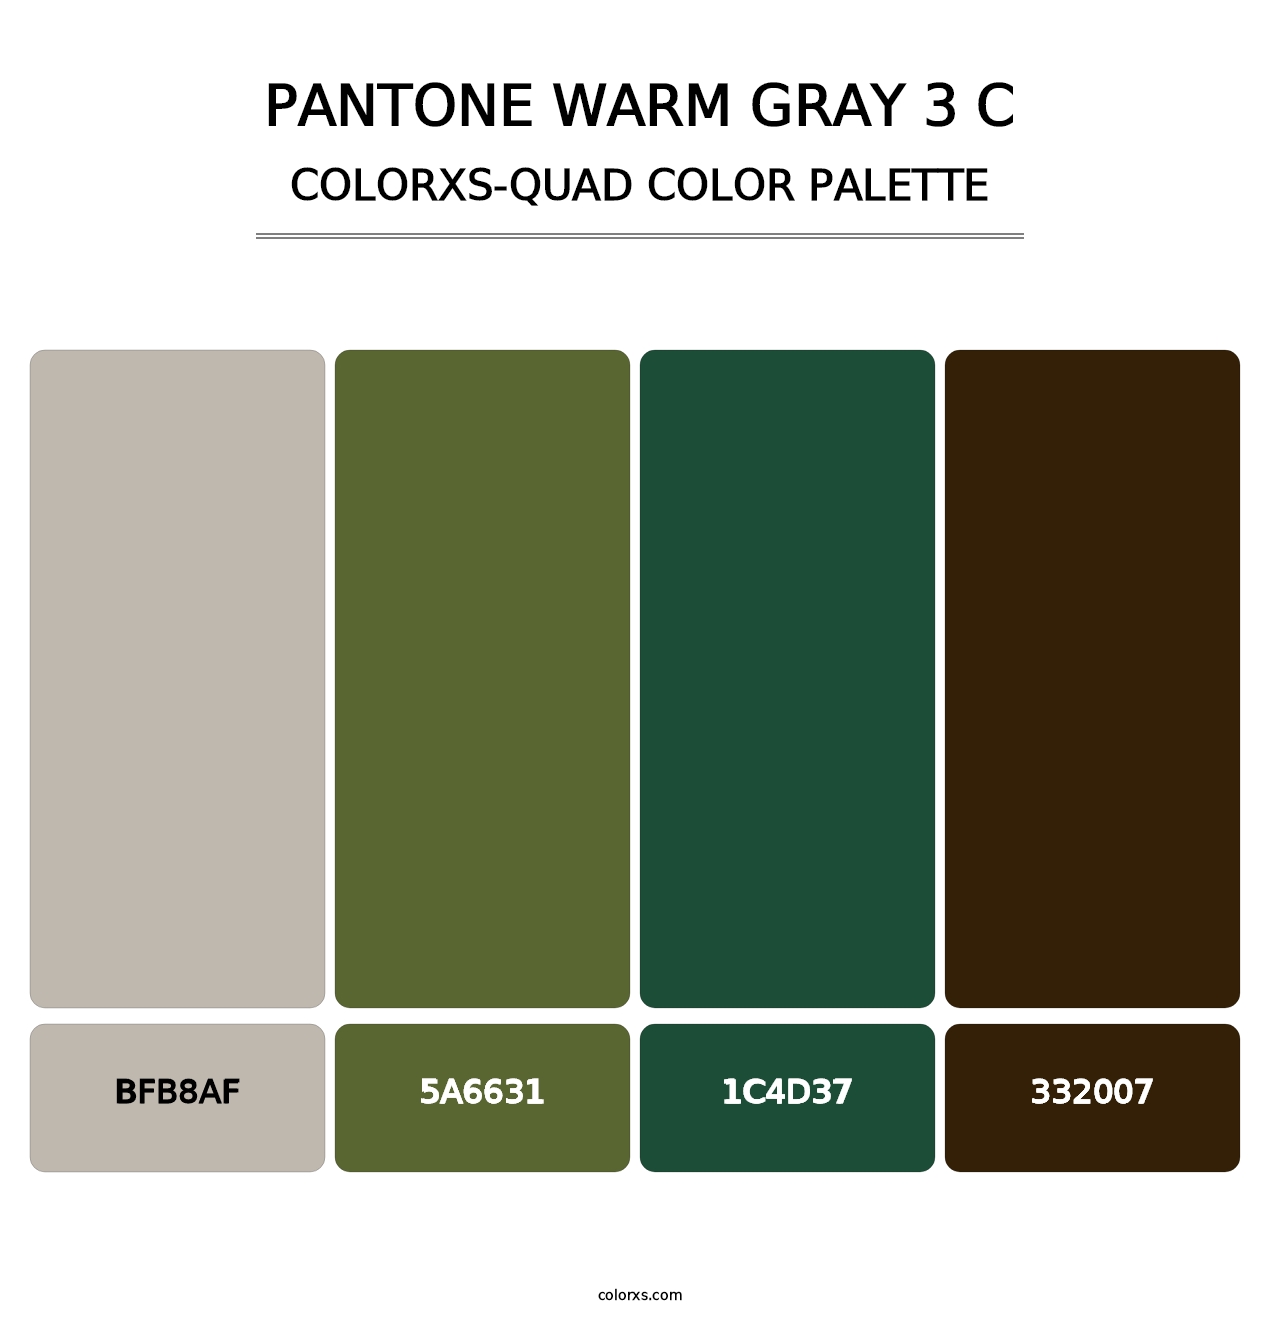 PANTONE Warm Gray 3 C - Colorxs Quad Palette